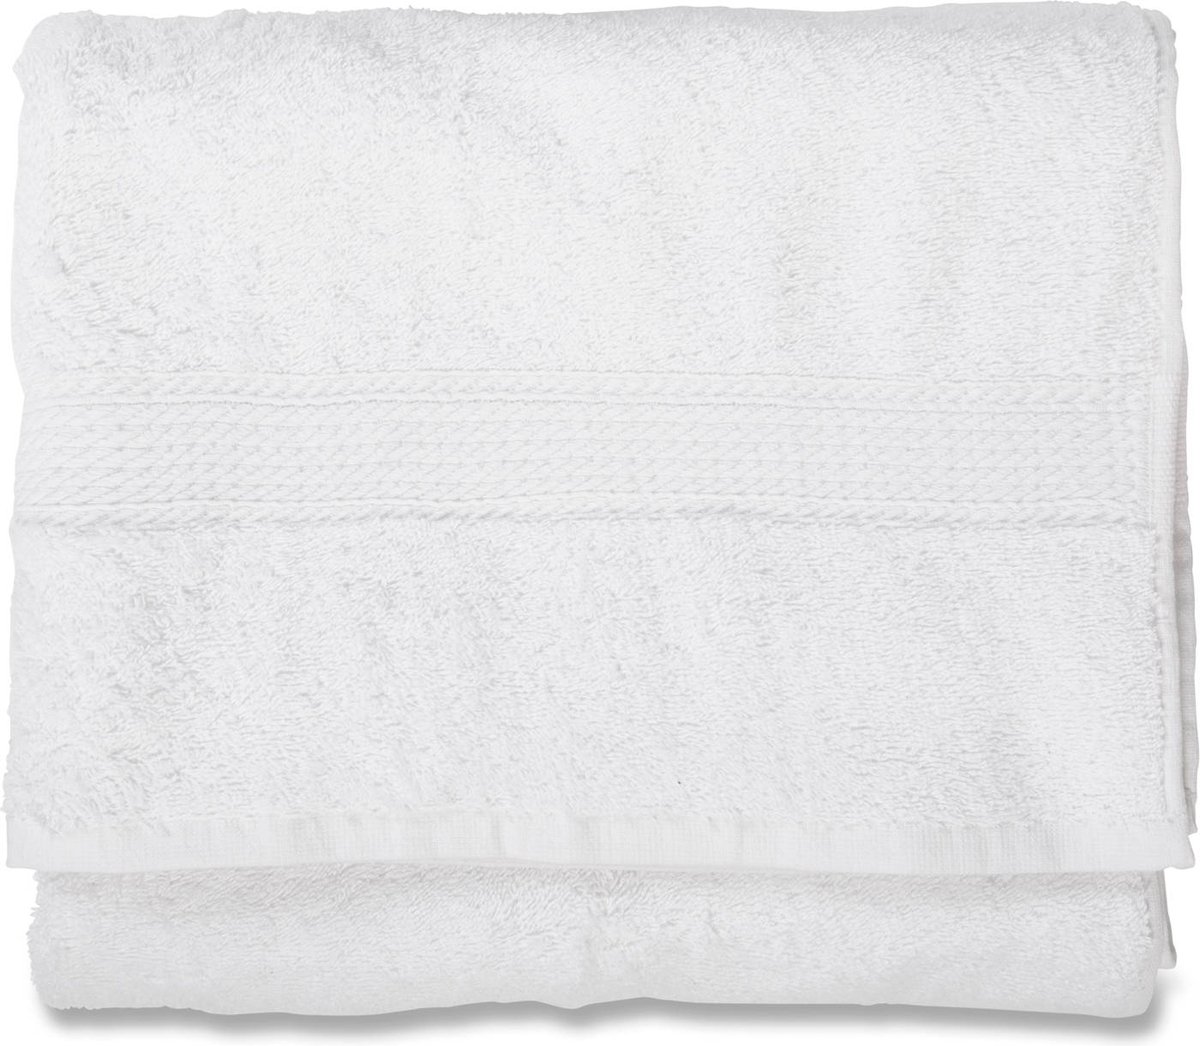 Blokker handdoek 500g - wit - 70x140 cm